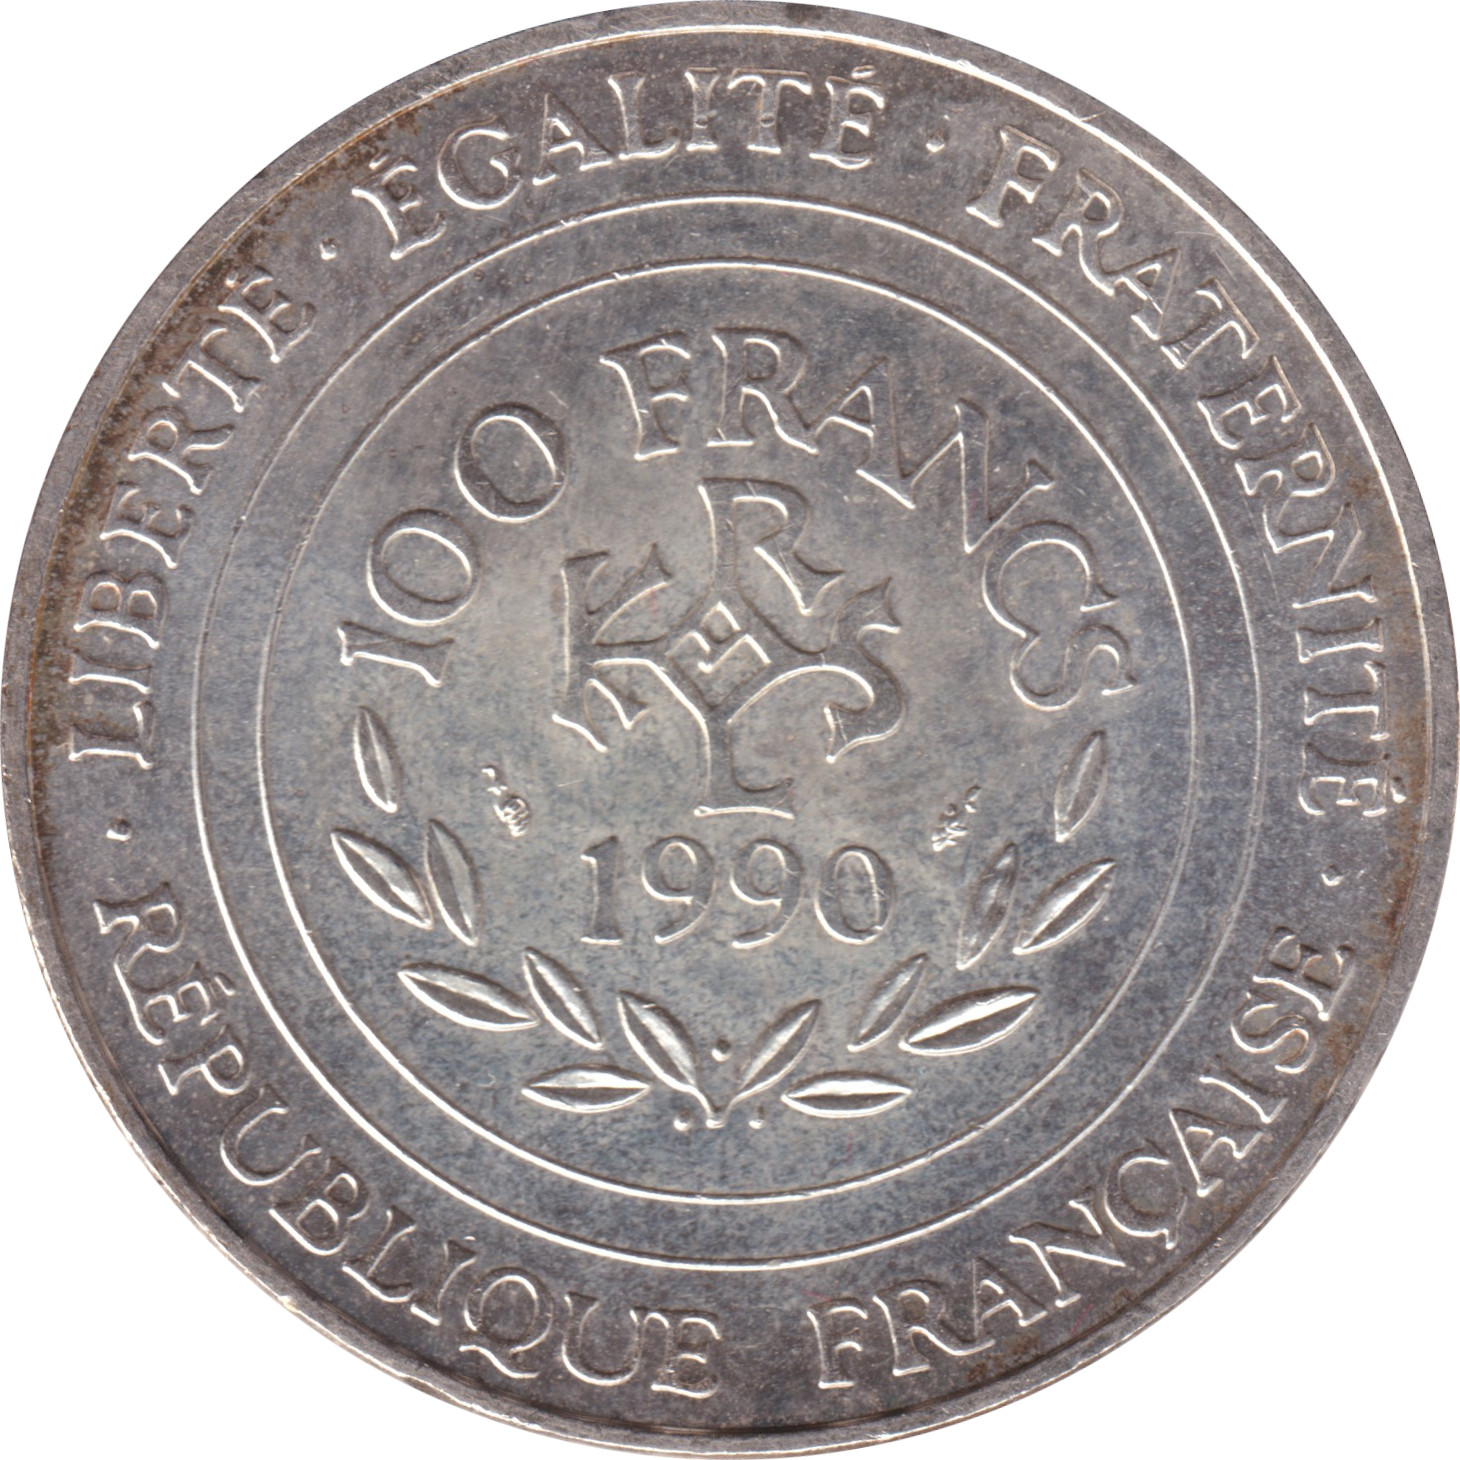 100 francs - Charlemagne